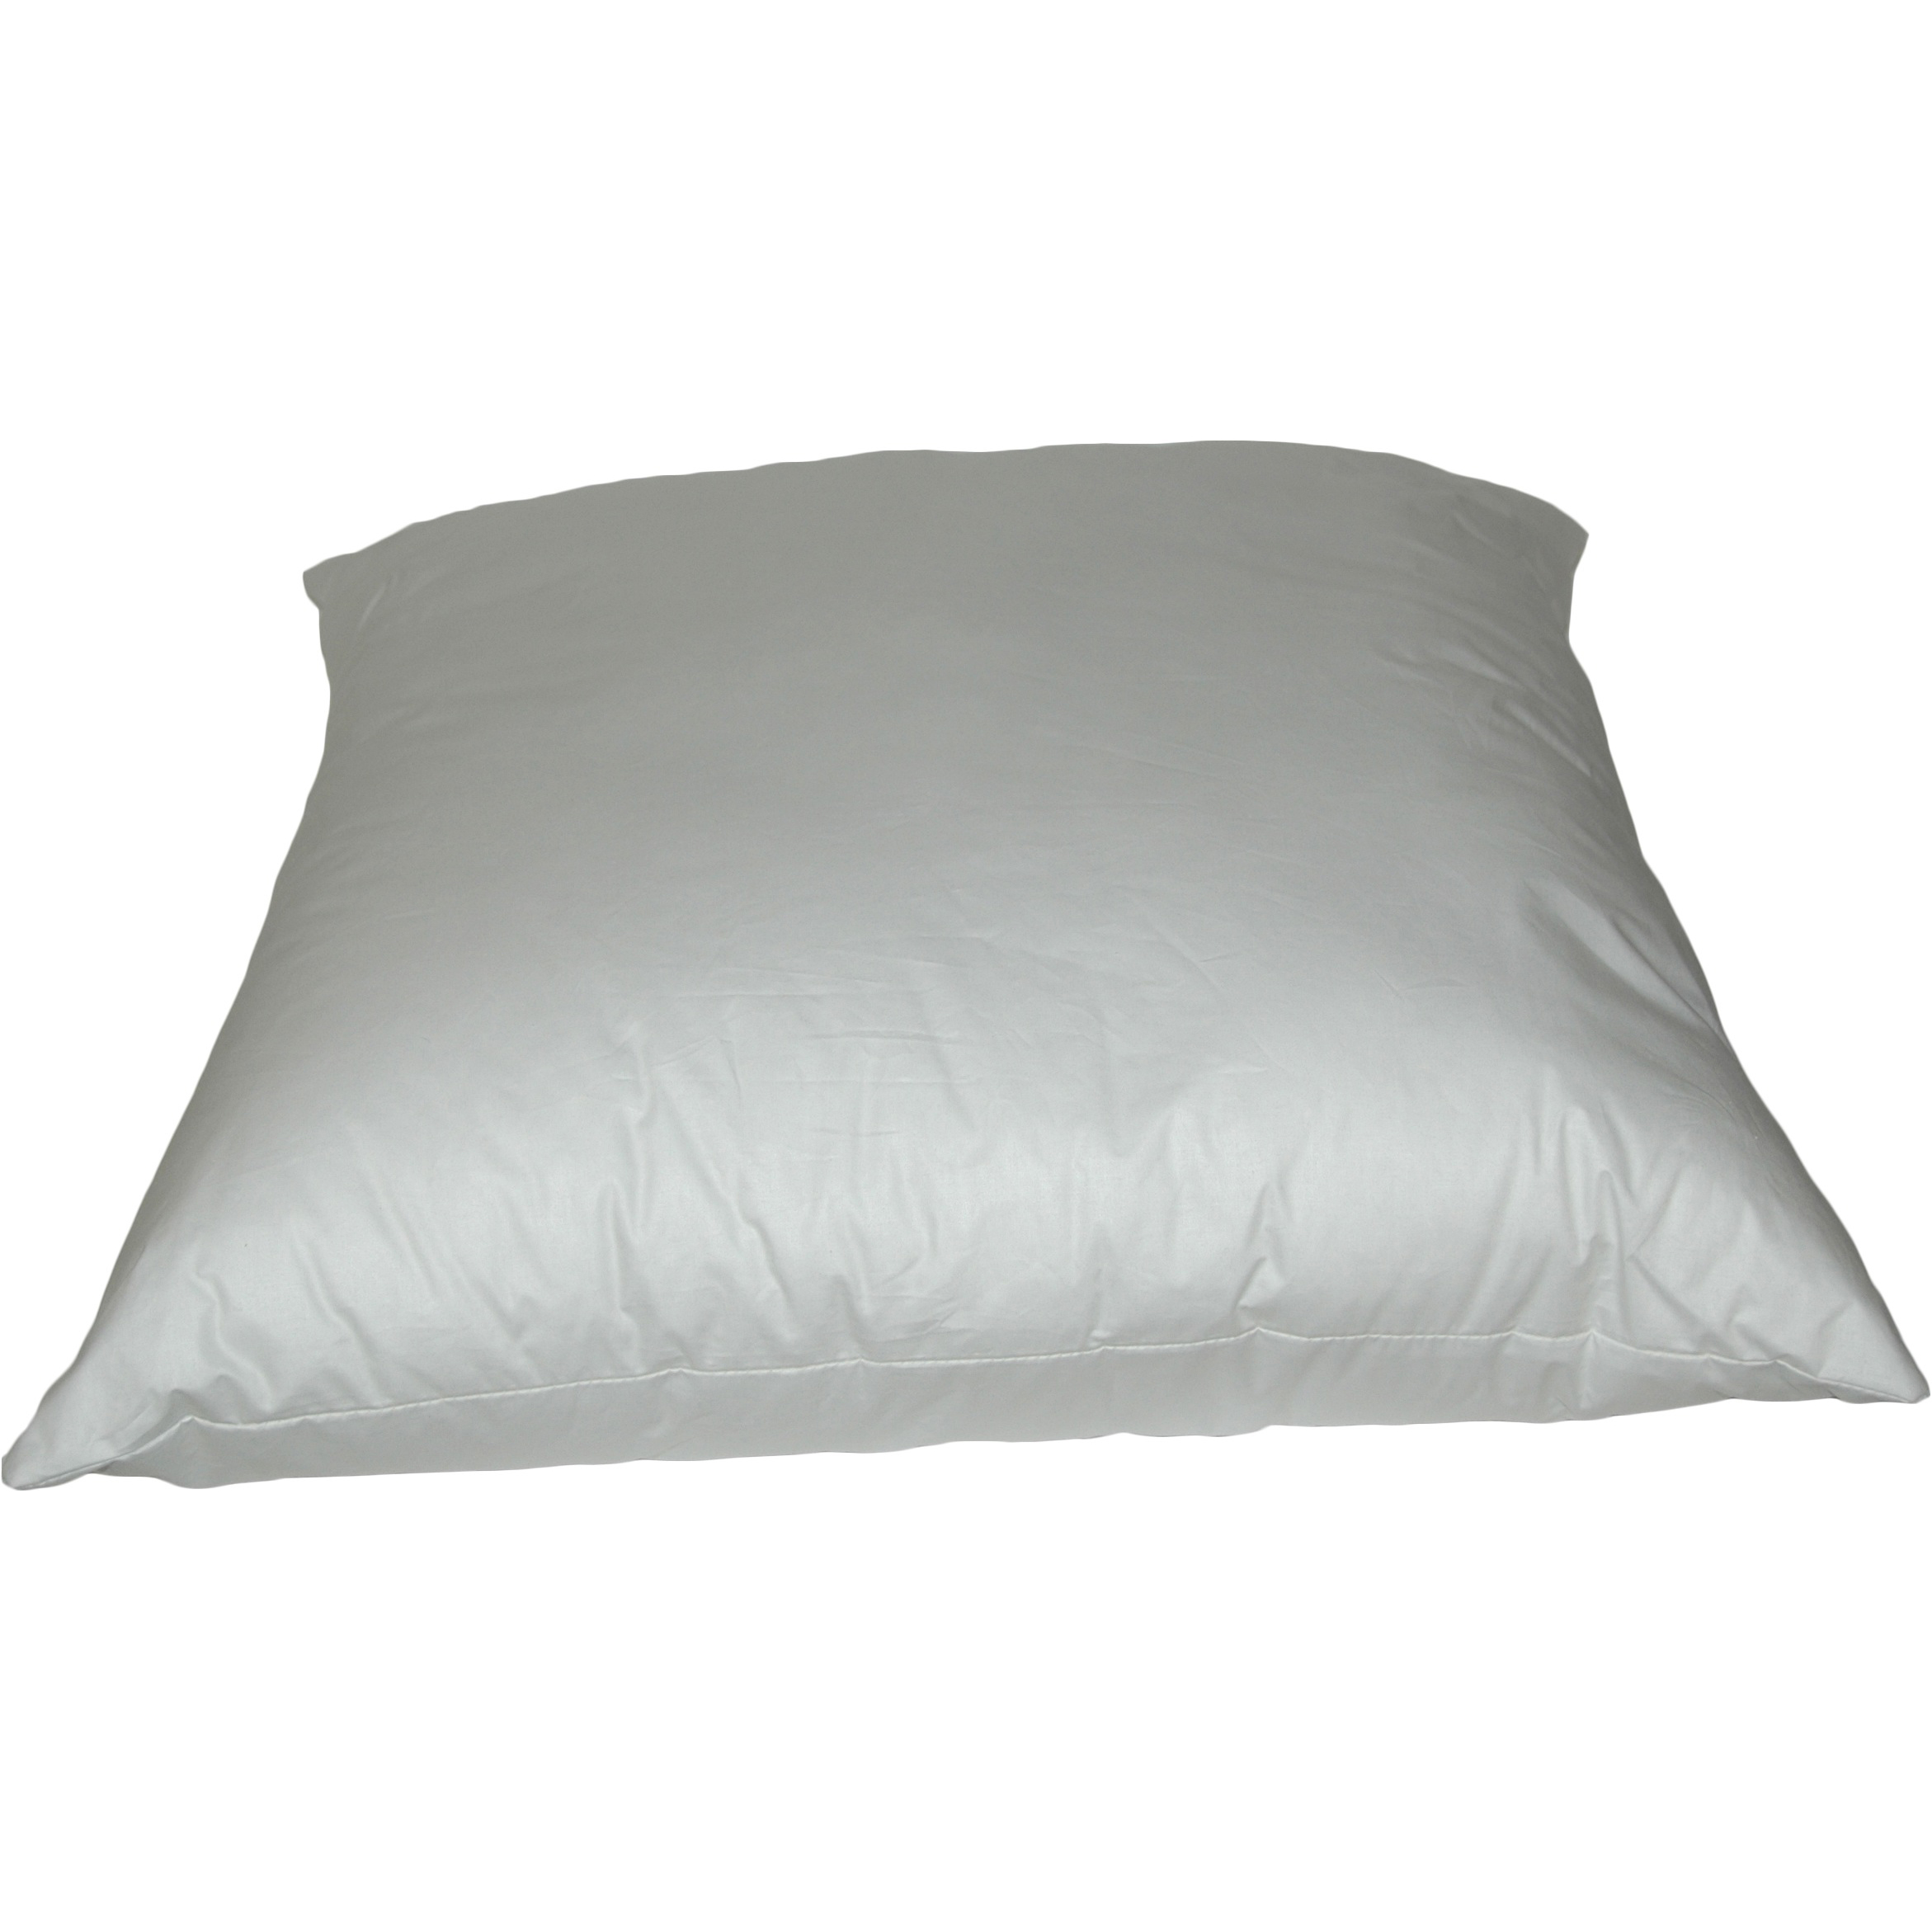 K-Fiber Pillows 16 inch